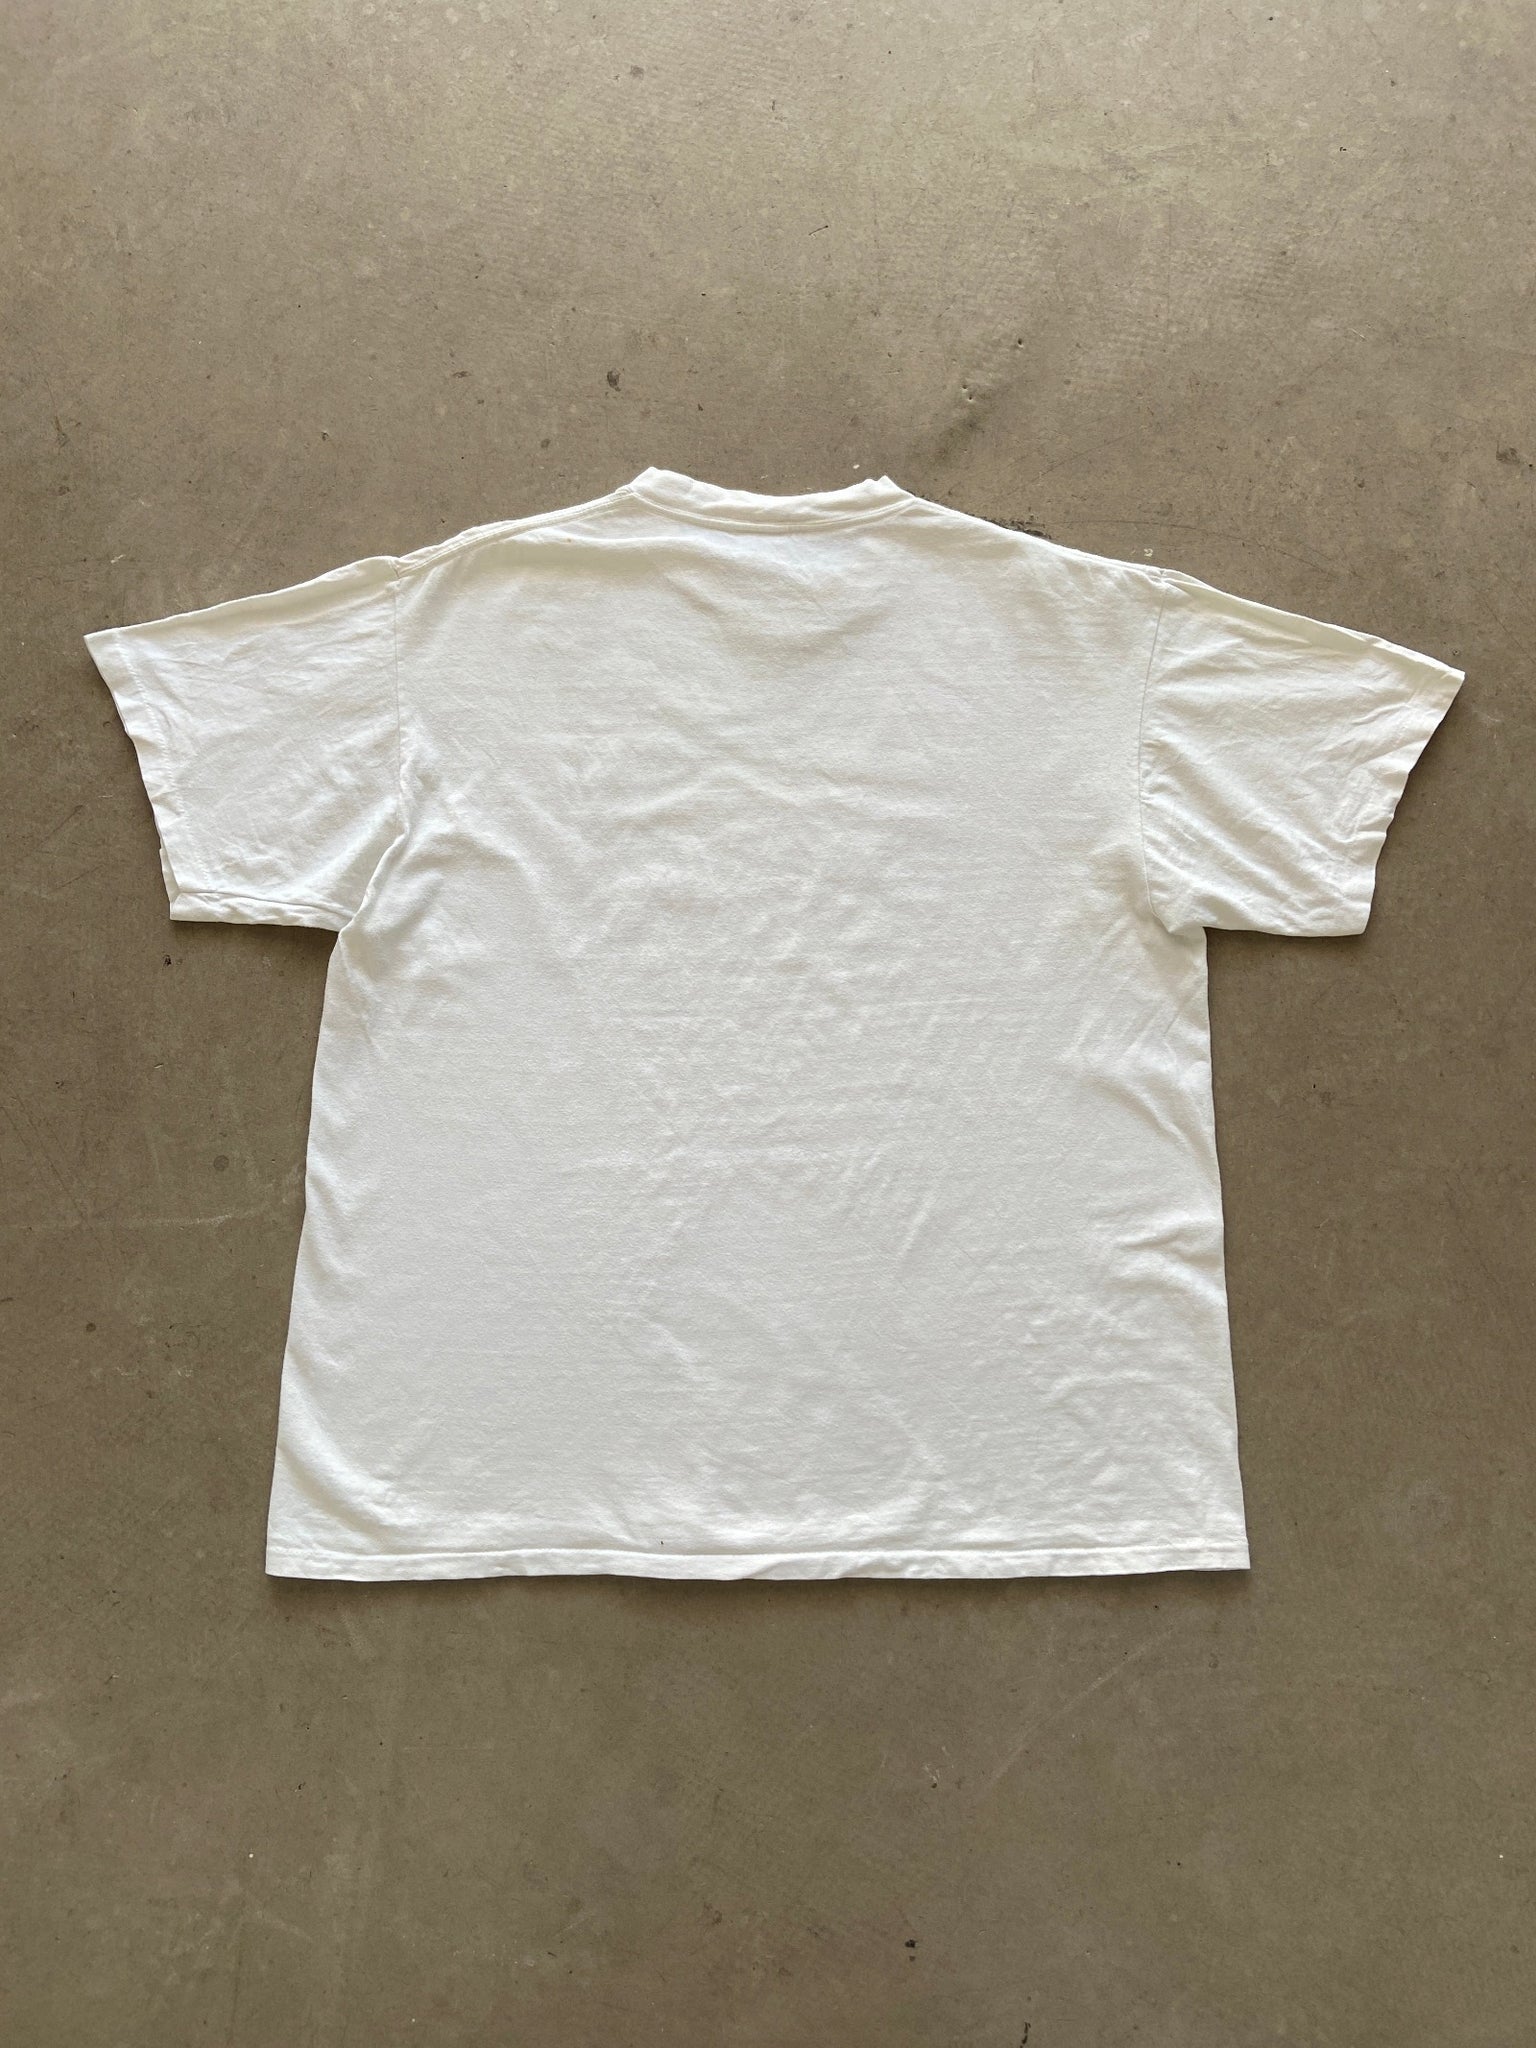 1993 Air Force One T-Shirt - XL